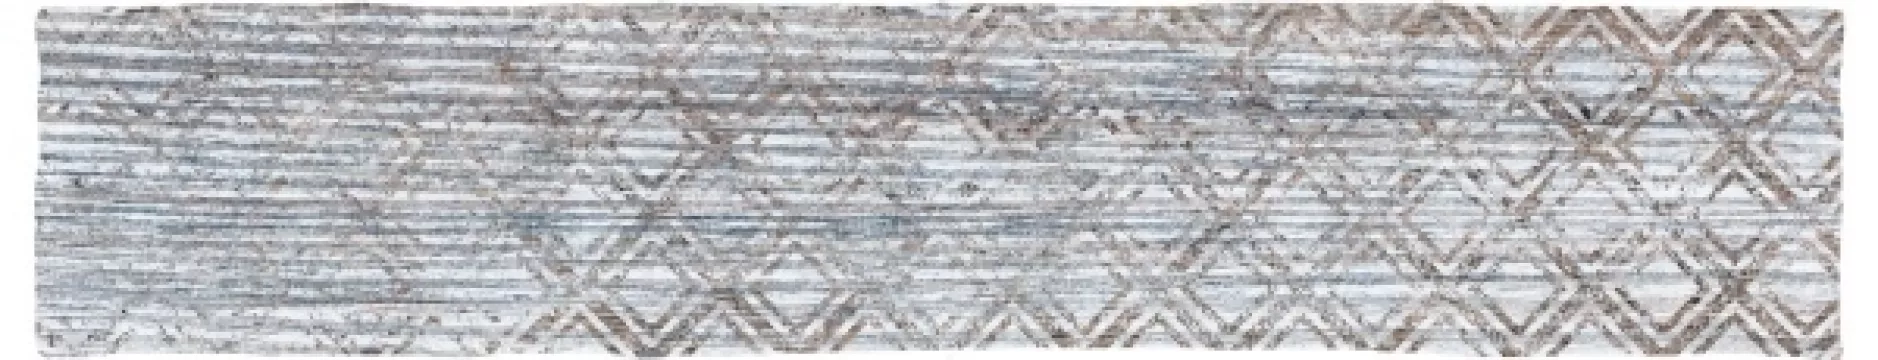 Керамическая плитка Wow Briques Wood 4.5x23